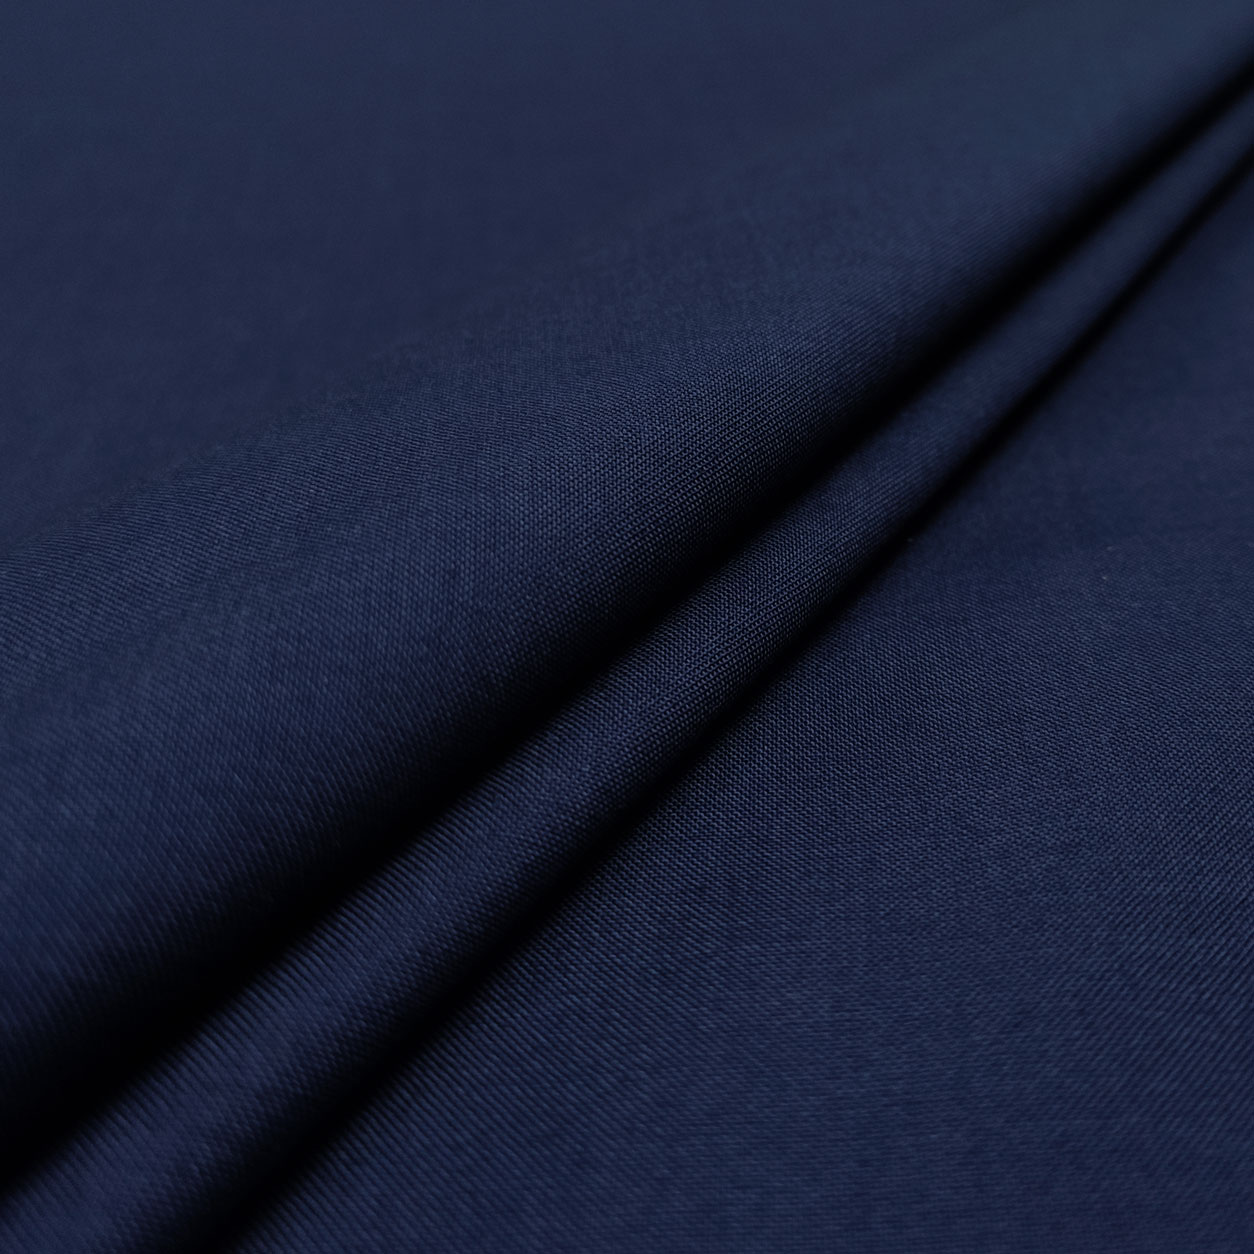 Ritaglio Misto Cotone per Abbigliamento Blu Notte 100x150 cm